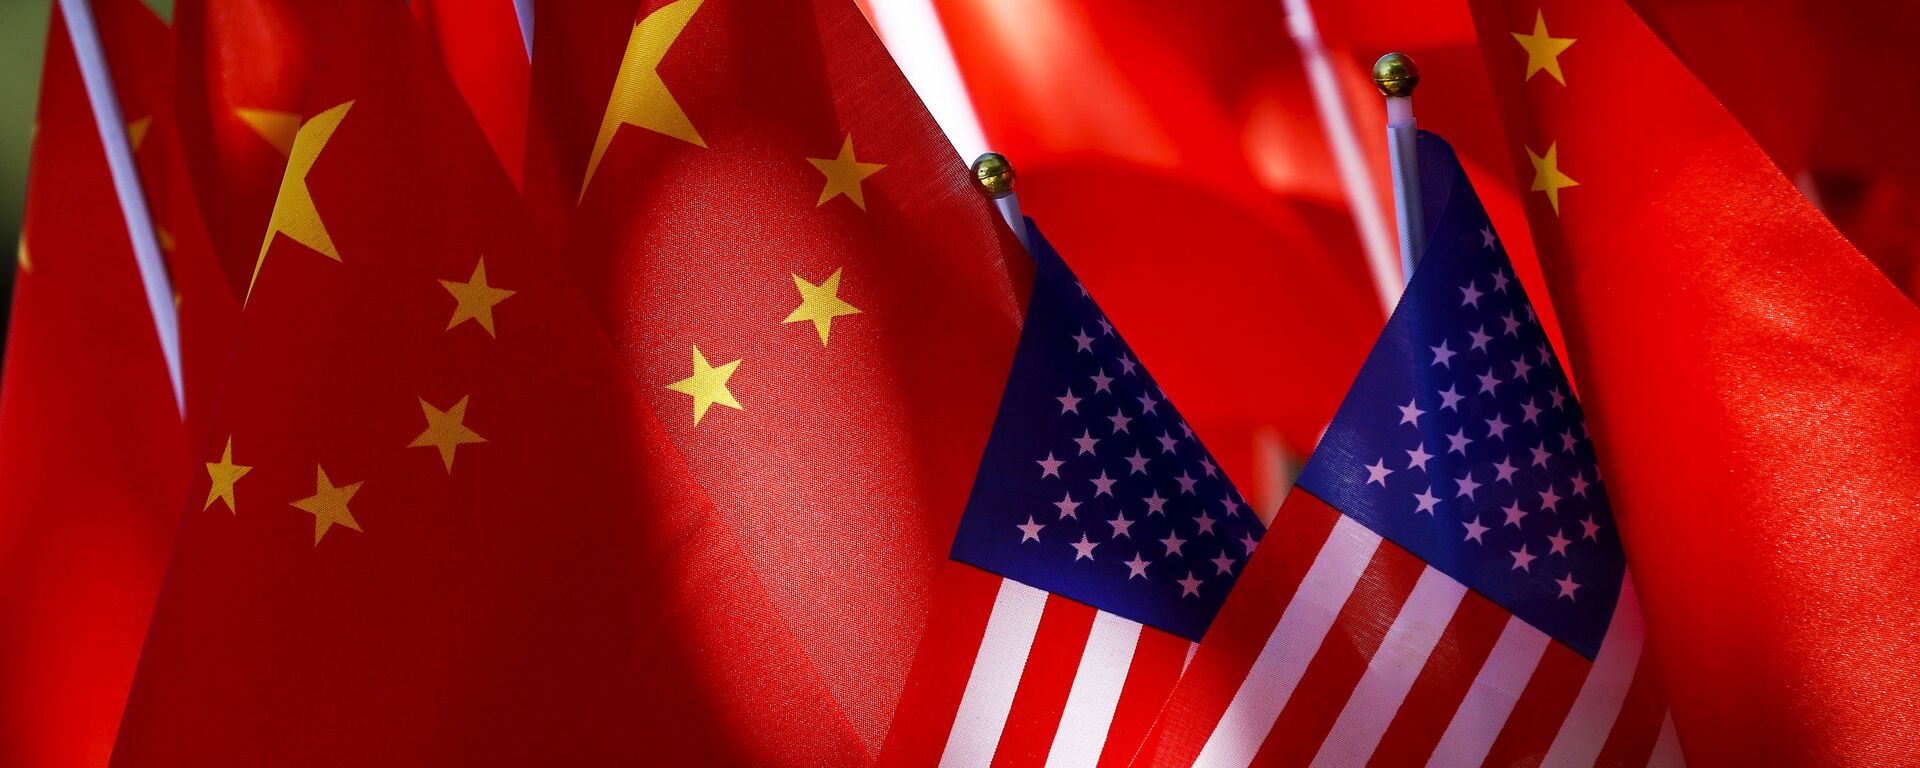 Banderas de EEUU y China - Sputnik Mundo, 1920, 15.03.2021